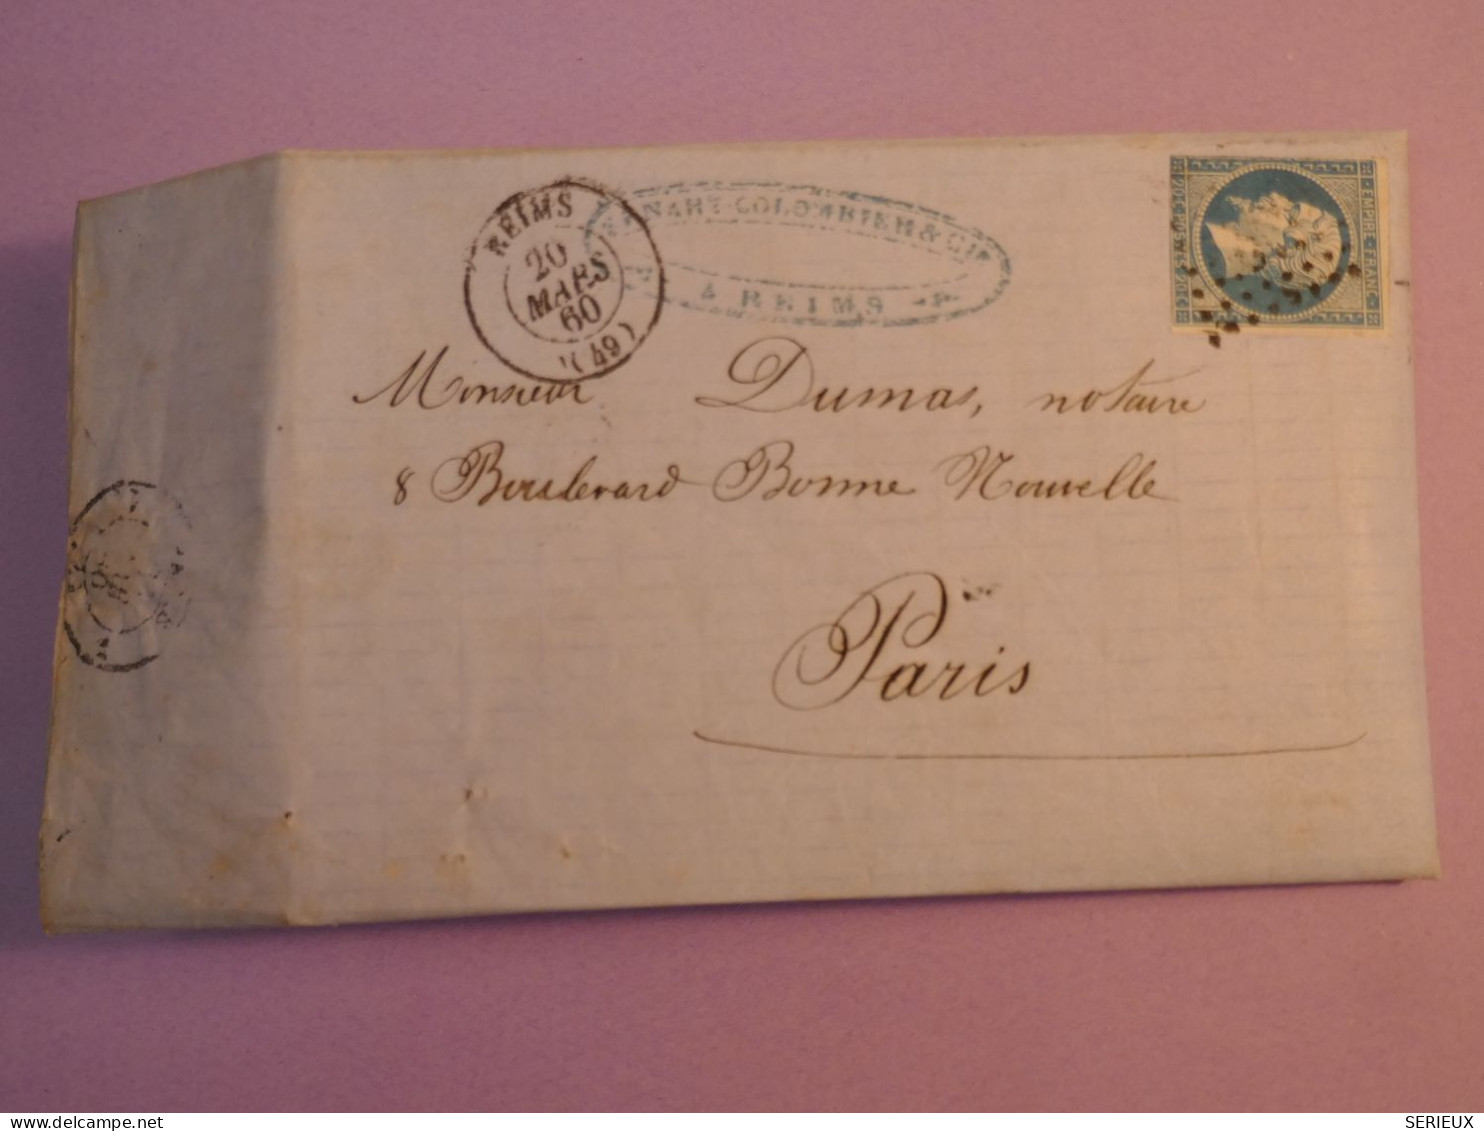 BY18 FRANCE  BELLE  LETTRE  1860 REIMS  A PARIS ++ NAPOLEON N° 14 ++AFF. INTERESSANT ++ - 1853-1860 Napoléon III.